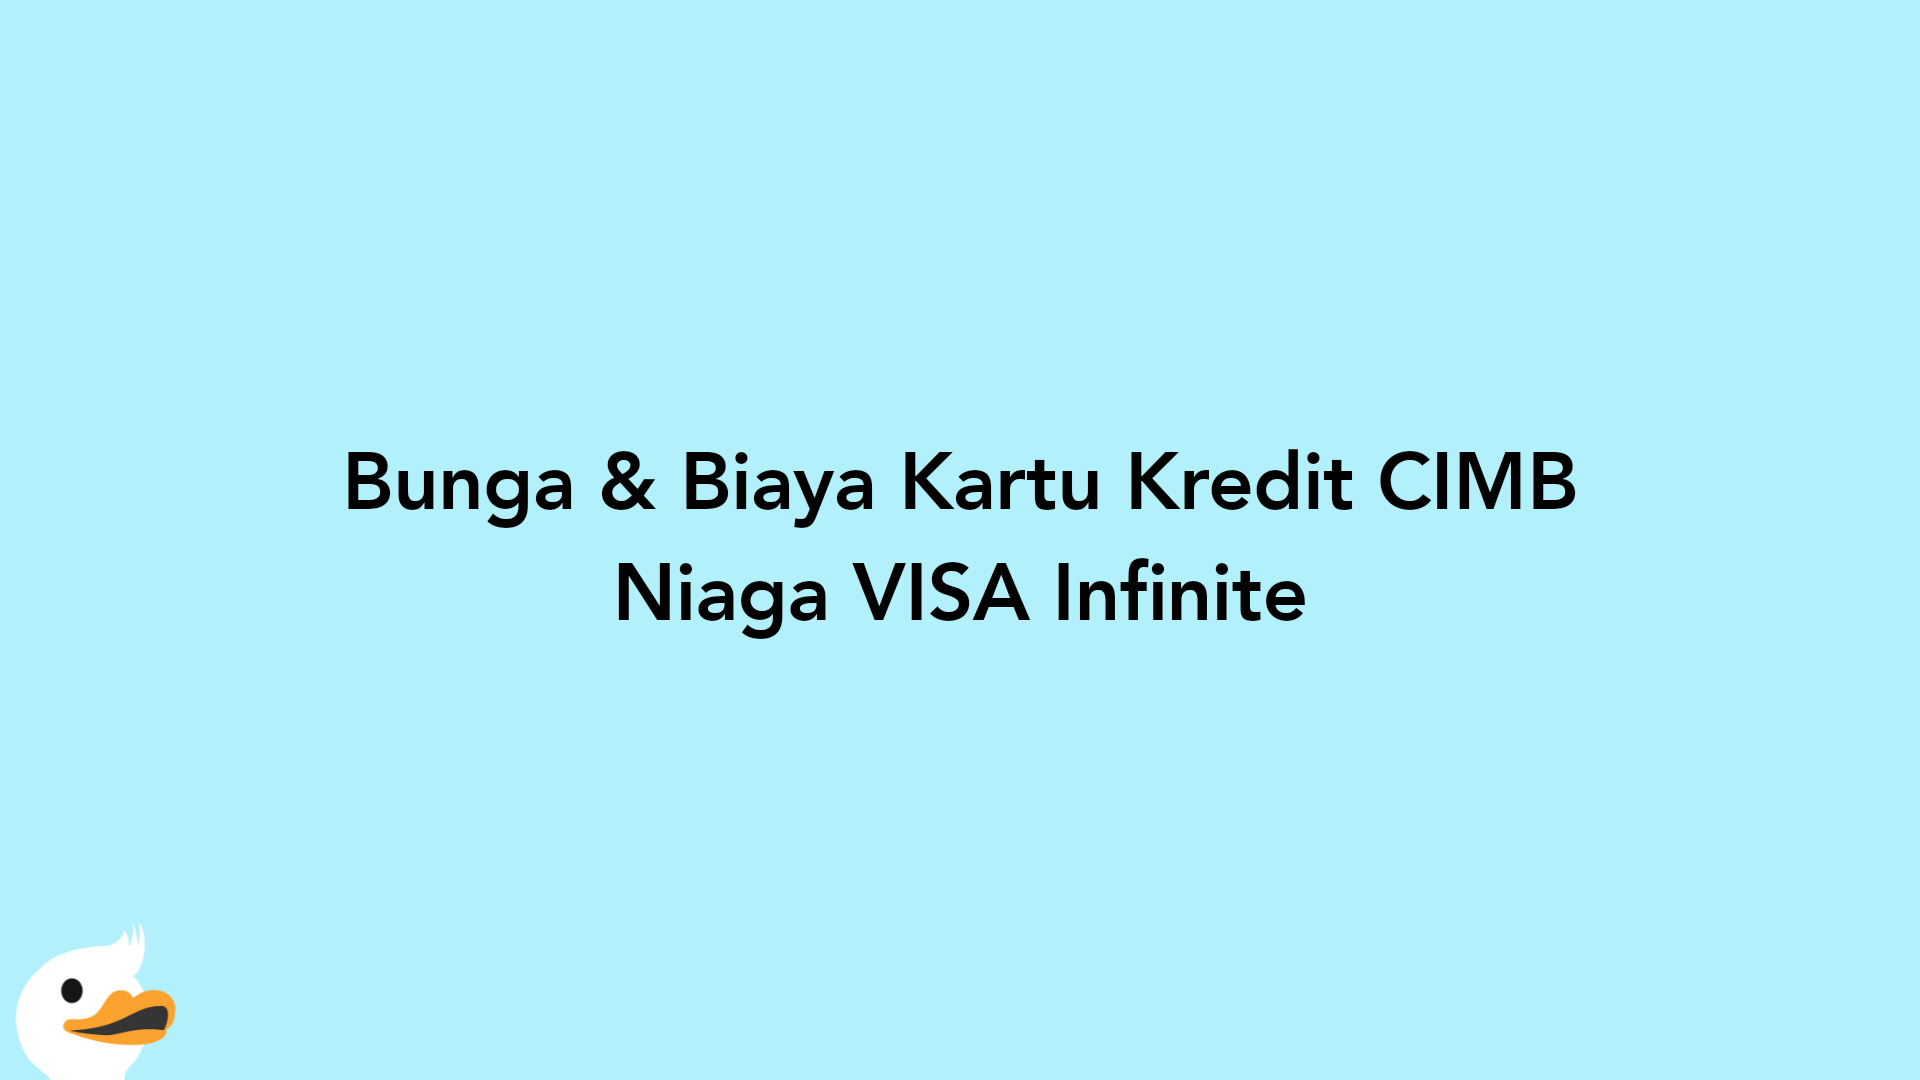 Bunga & Biaya Kartu Kredit CIMB Niaga VISA Infinite